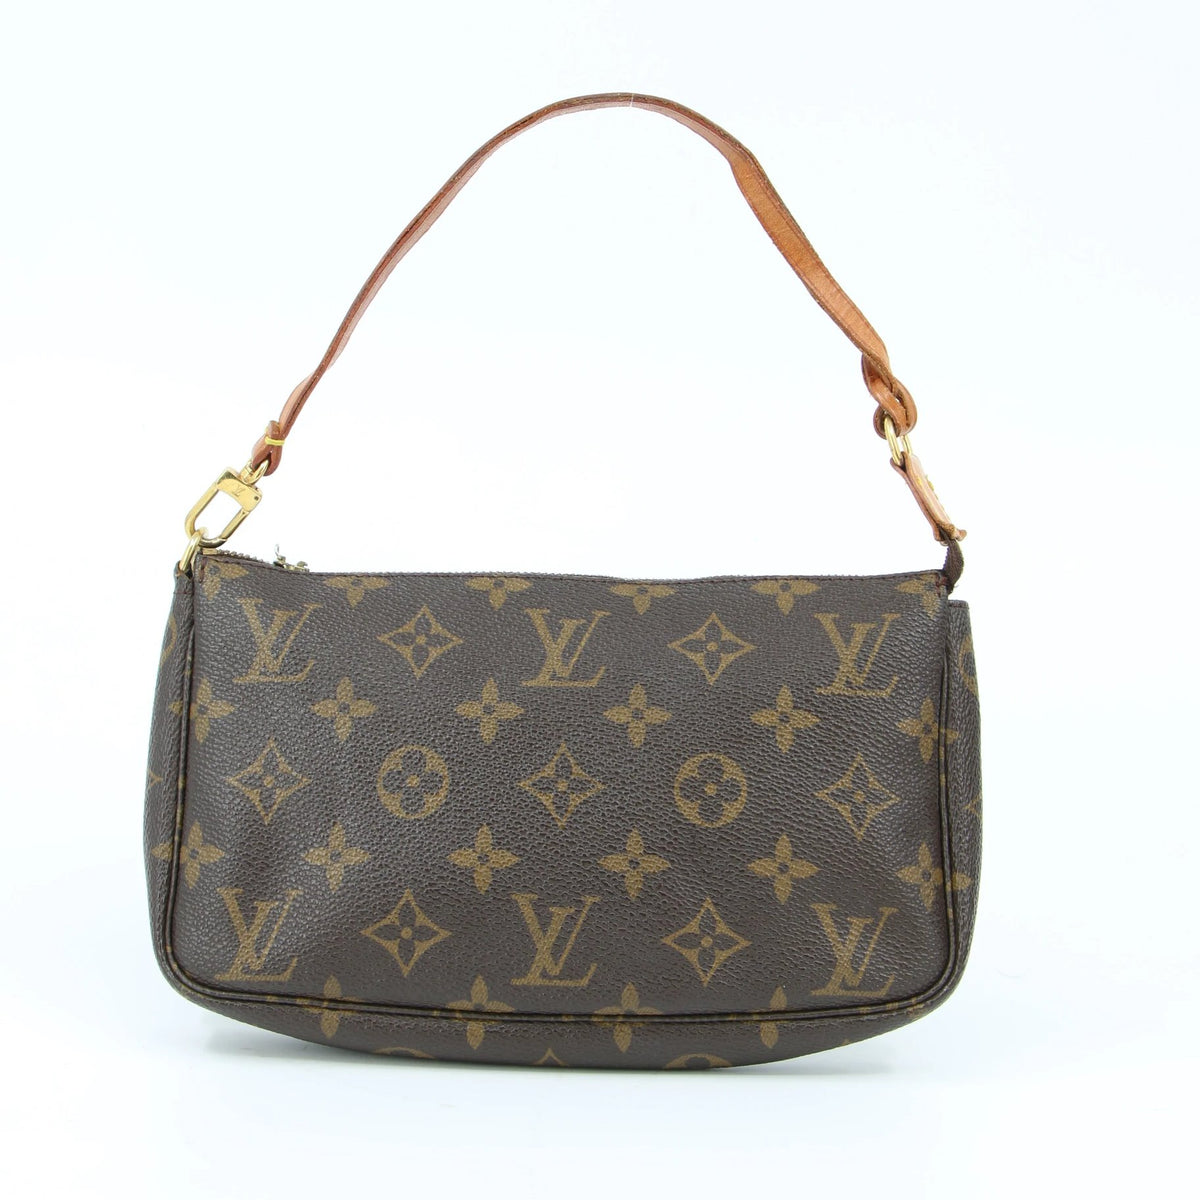 Vuitton tasker - Køb din næste Louis Vuitton taske hos Collector's Cage